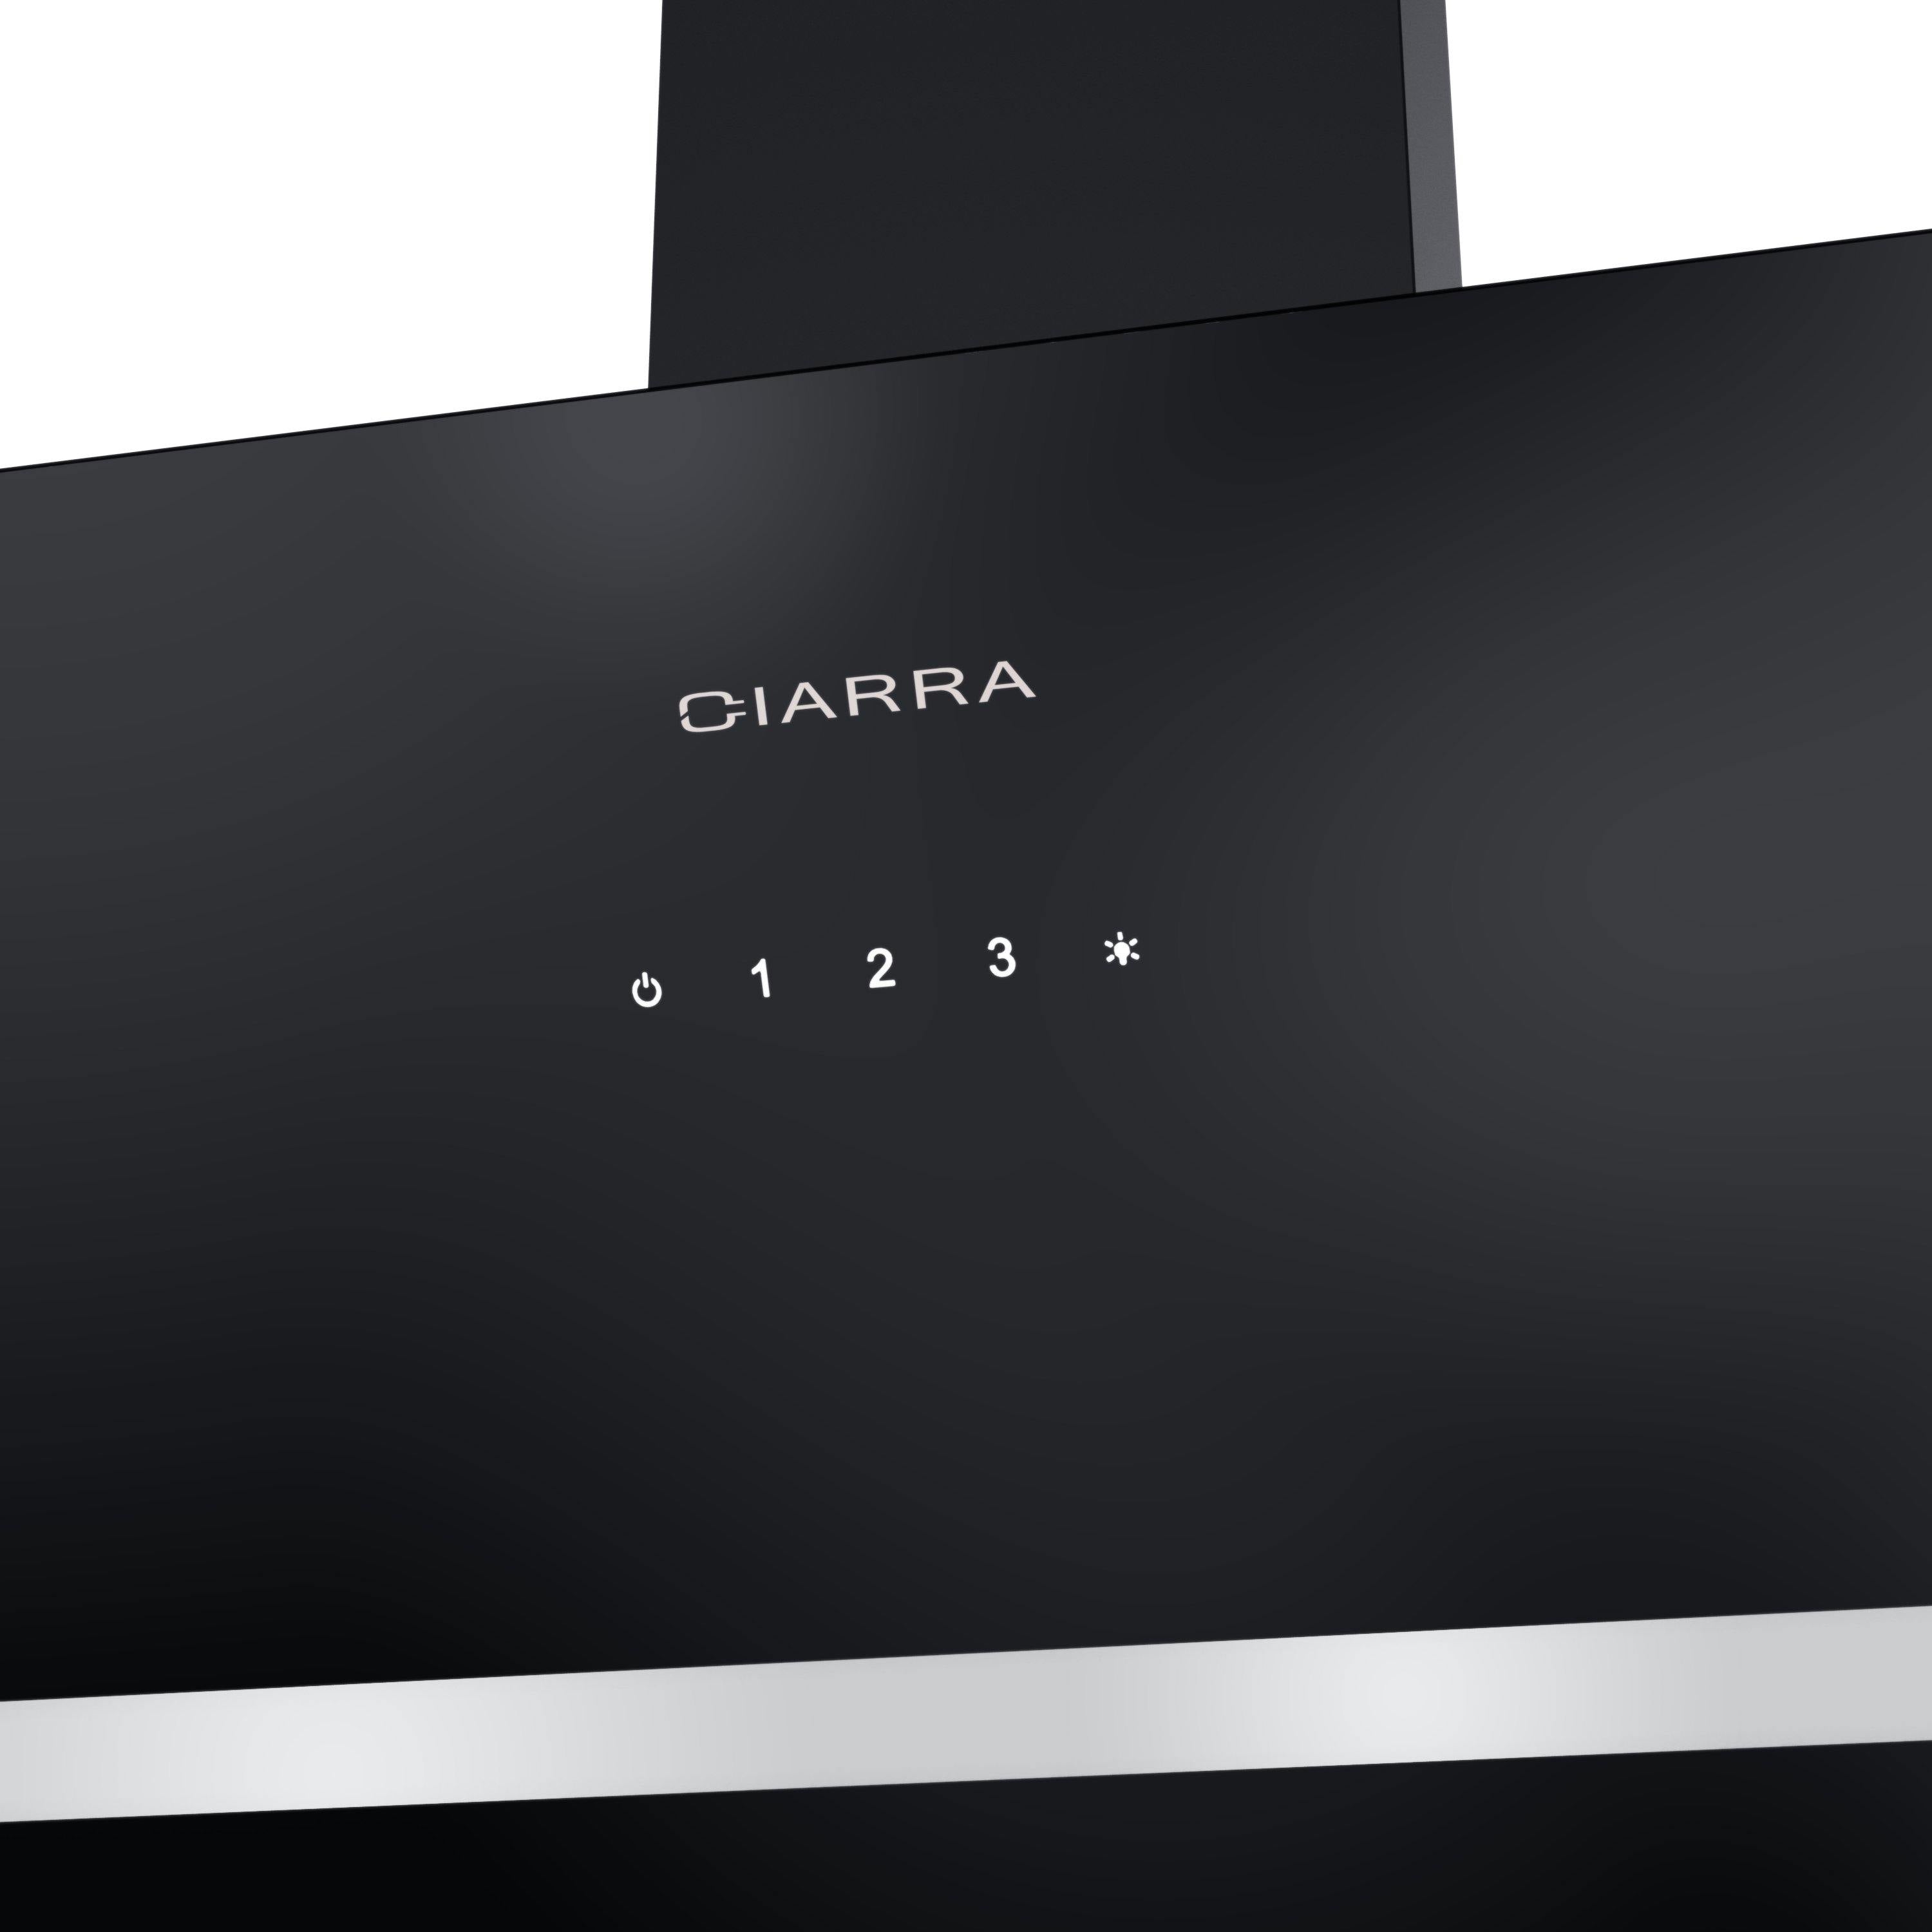 CIARRA Hotte Inclinée 650m³/h Classe A+++ Eclairage LED Noir CBCB6736H